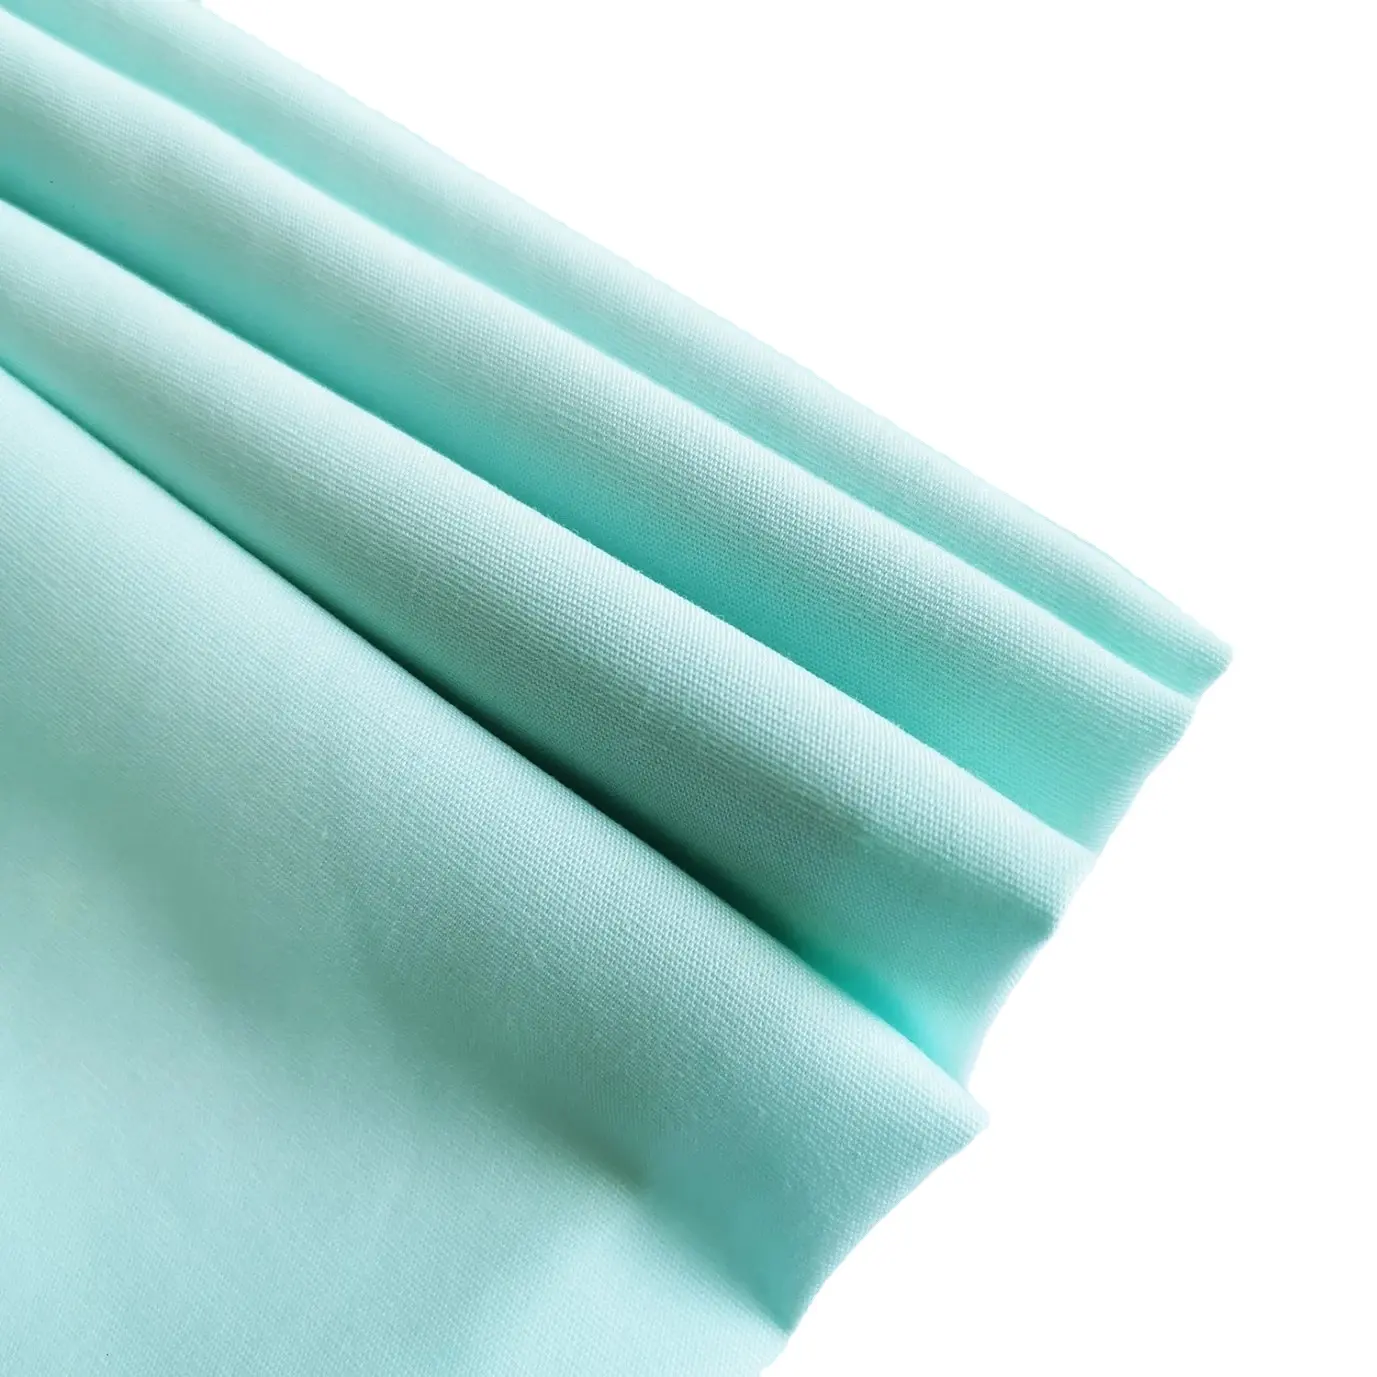 Jintai textil Co., Venta al por mayor IVA teñido Tc 65/35 poliéster algodón taladro tela para médicos y enfermeras médico uniforme